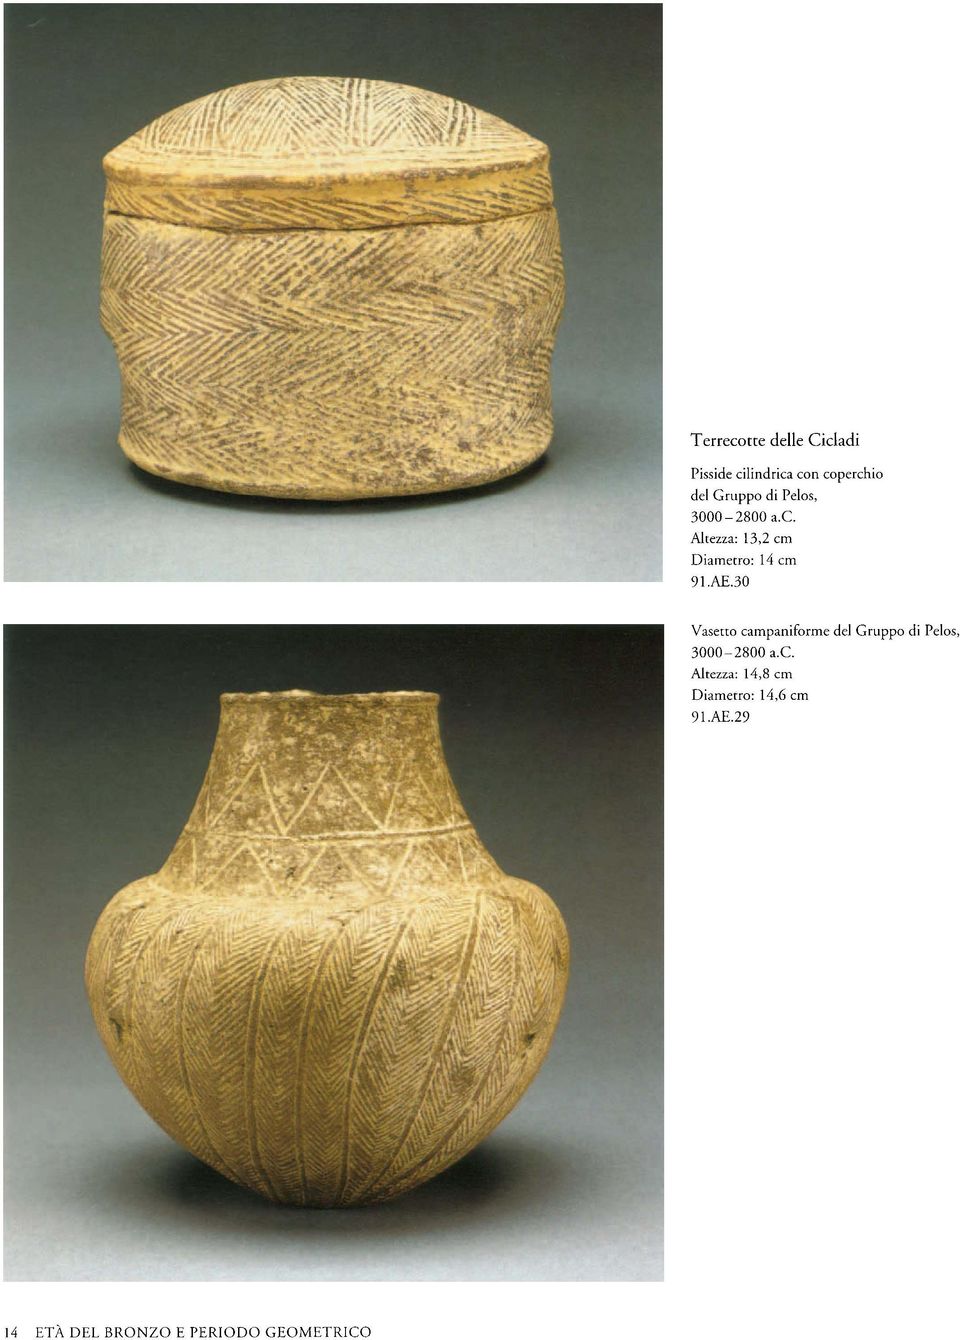 30 Vasetto campaniforme del Gruppo di Pelos, 3000-2800 a.c. Altezza: 14,8 cm Diametro: 14,6 cm 91.